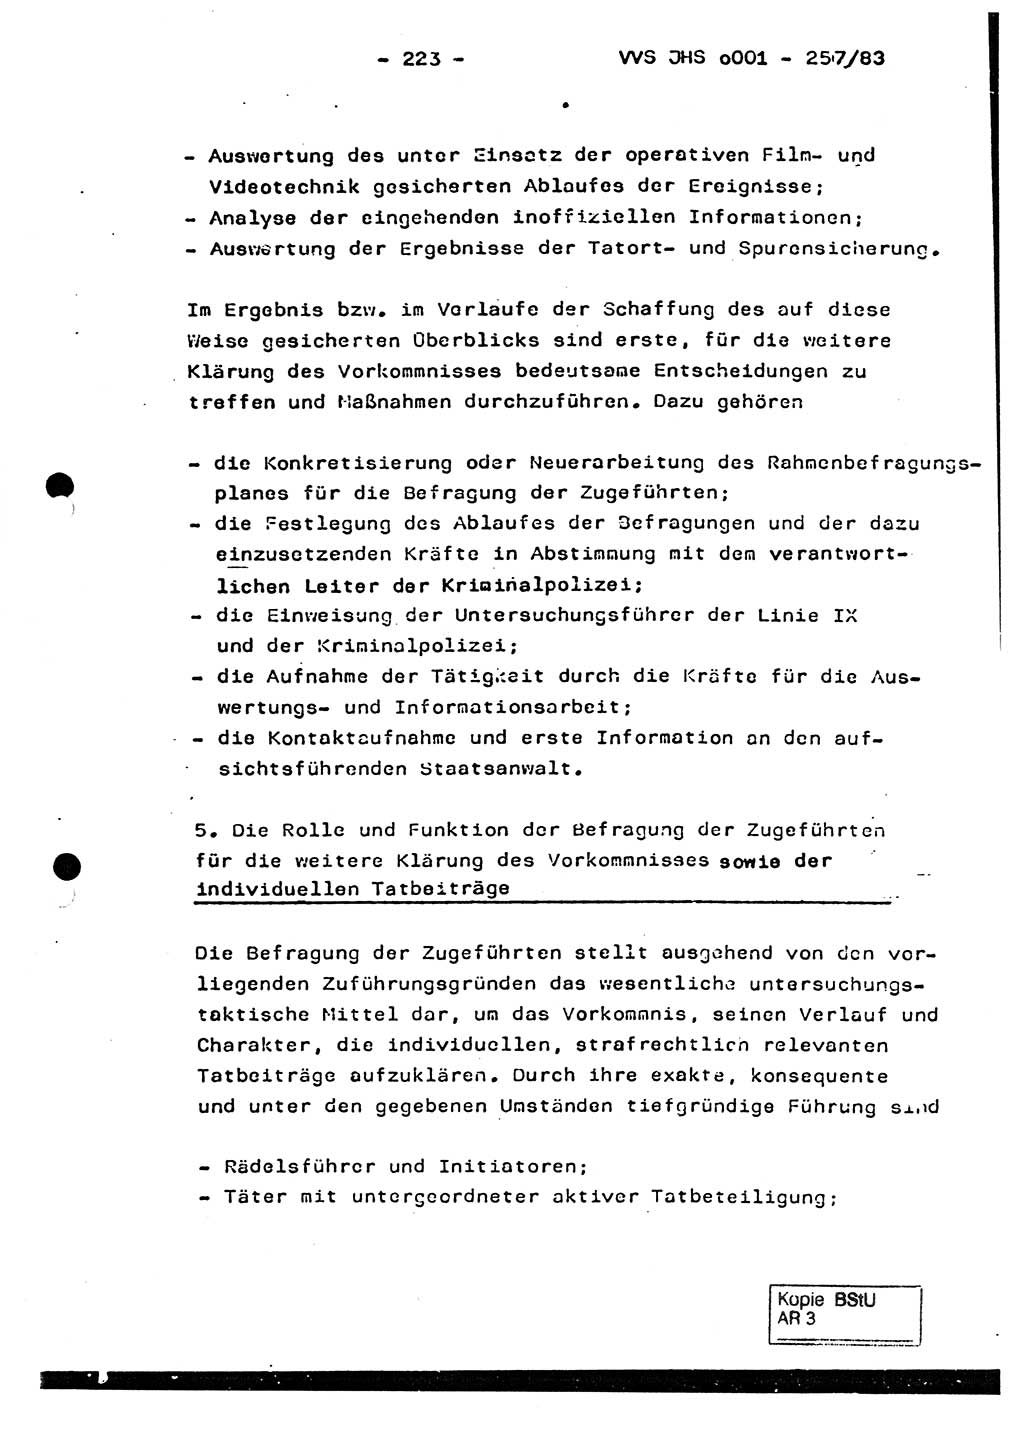 Dissertation, Oberst Helmut Lubas (BV Mdg.), Oberstleutnant Manfred Eschberger (HA IX), Oberleutnant Hans-Jürgen Ludwig (JHS), Ministerium für Staatssicherheit (MfS) [Deutsche Demokratische Republik (DDR)], Juristische Hochschule (JHS), Vertrauliche Verschlußsache (VVS) o001-257/83, Potsdam 1983, Seite 223 (Diss. MfS DDR JHS VVS o001-257/83 1983, S. 223)